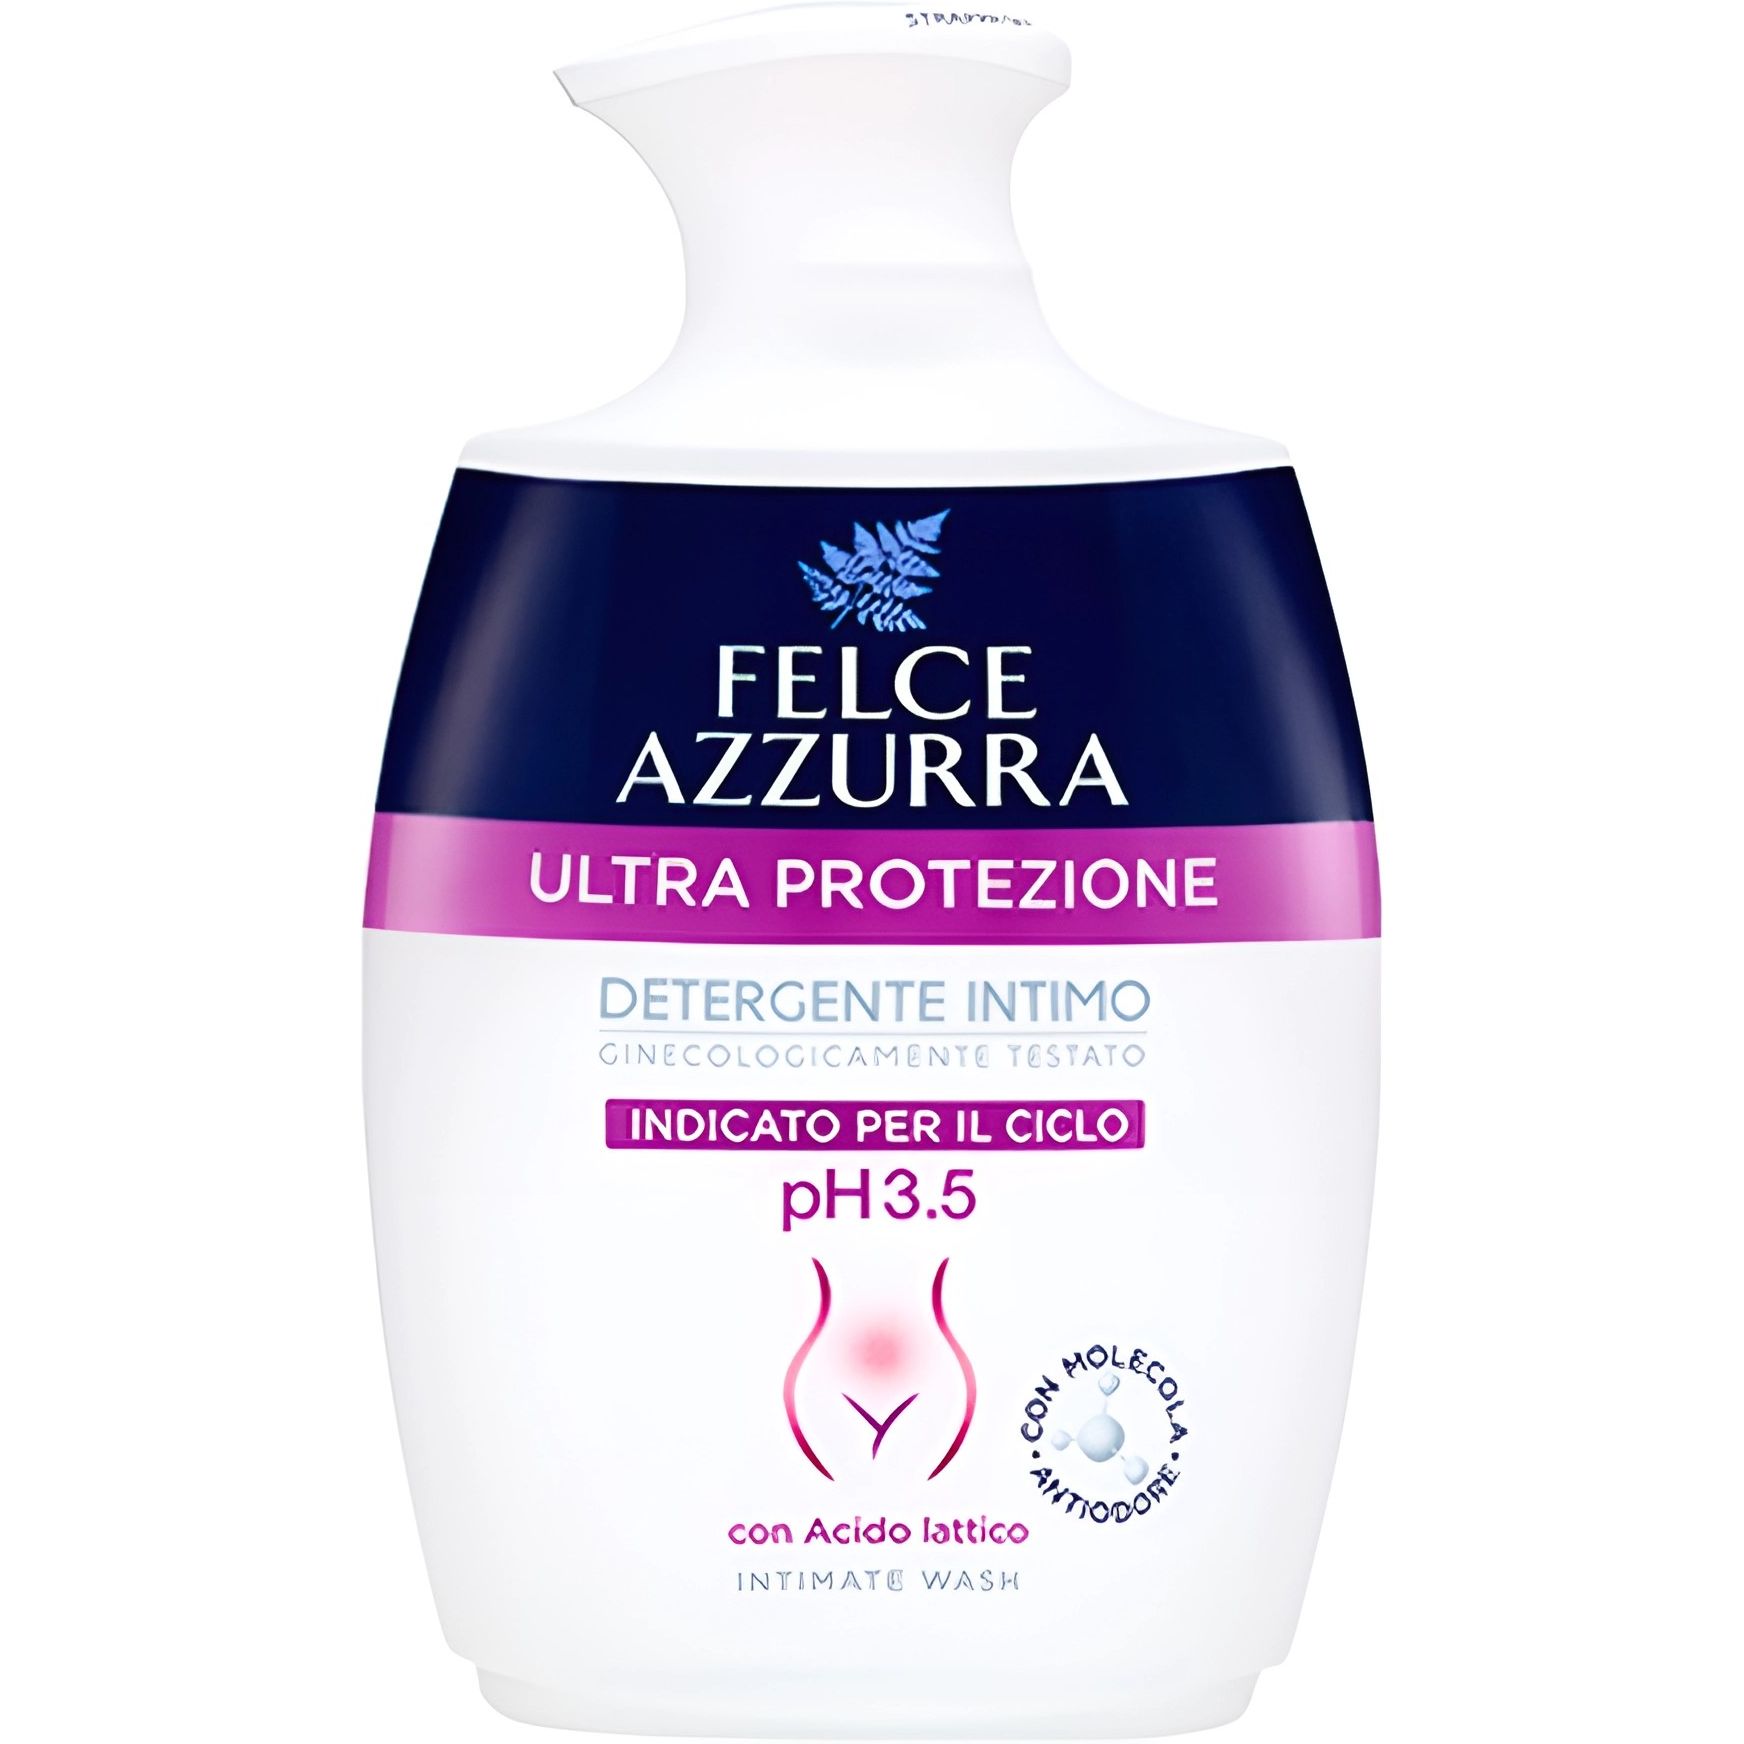 Жидкое мыло для интимной гигиены Felce Azzurra Ультразащита 250 мл - фото 1